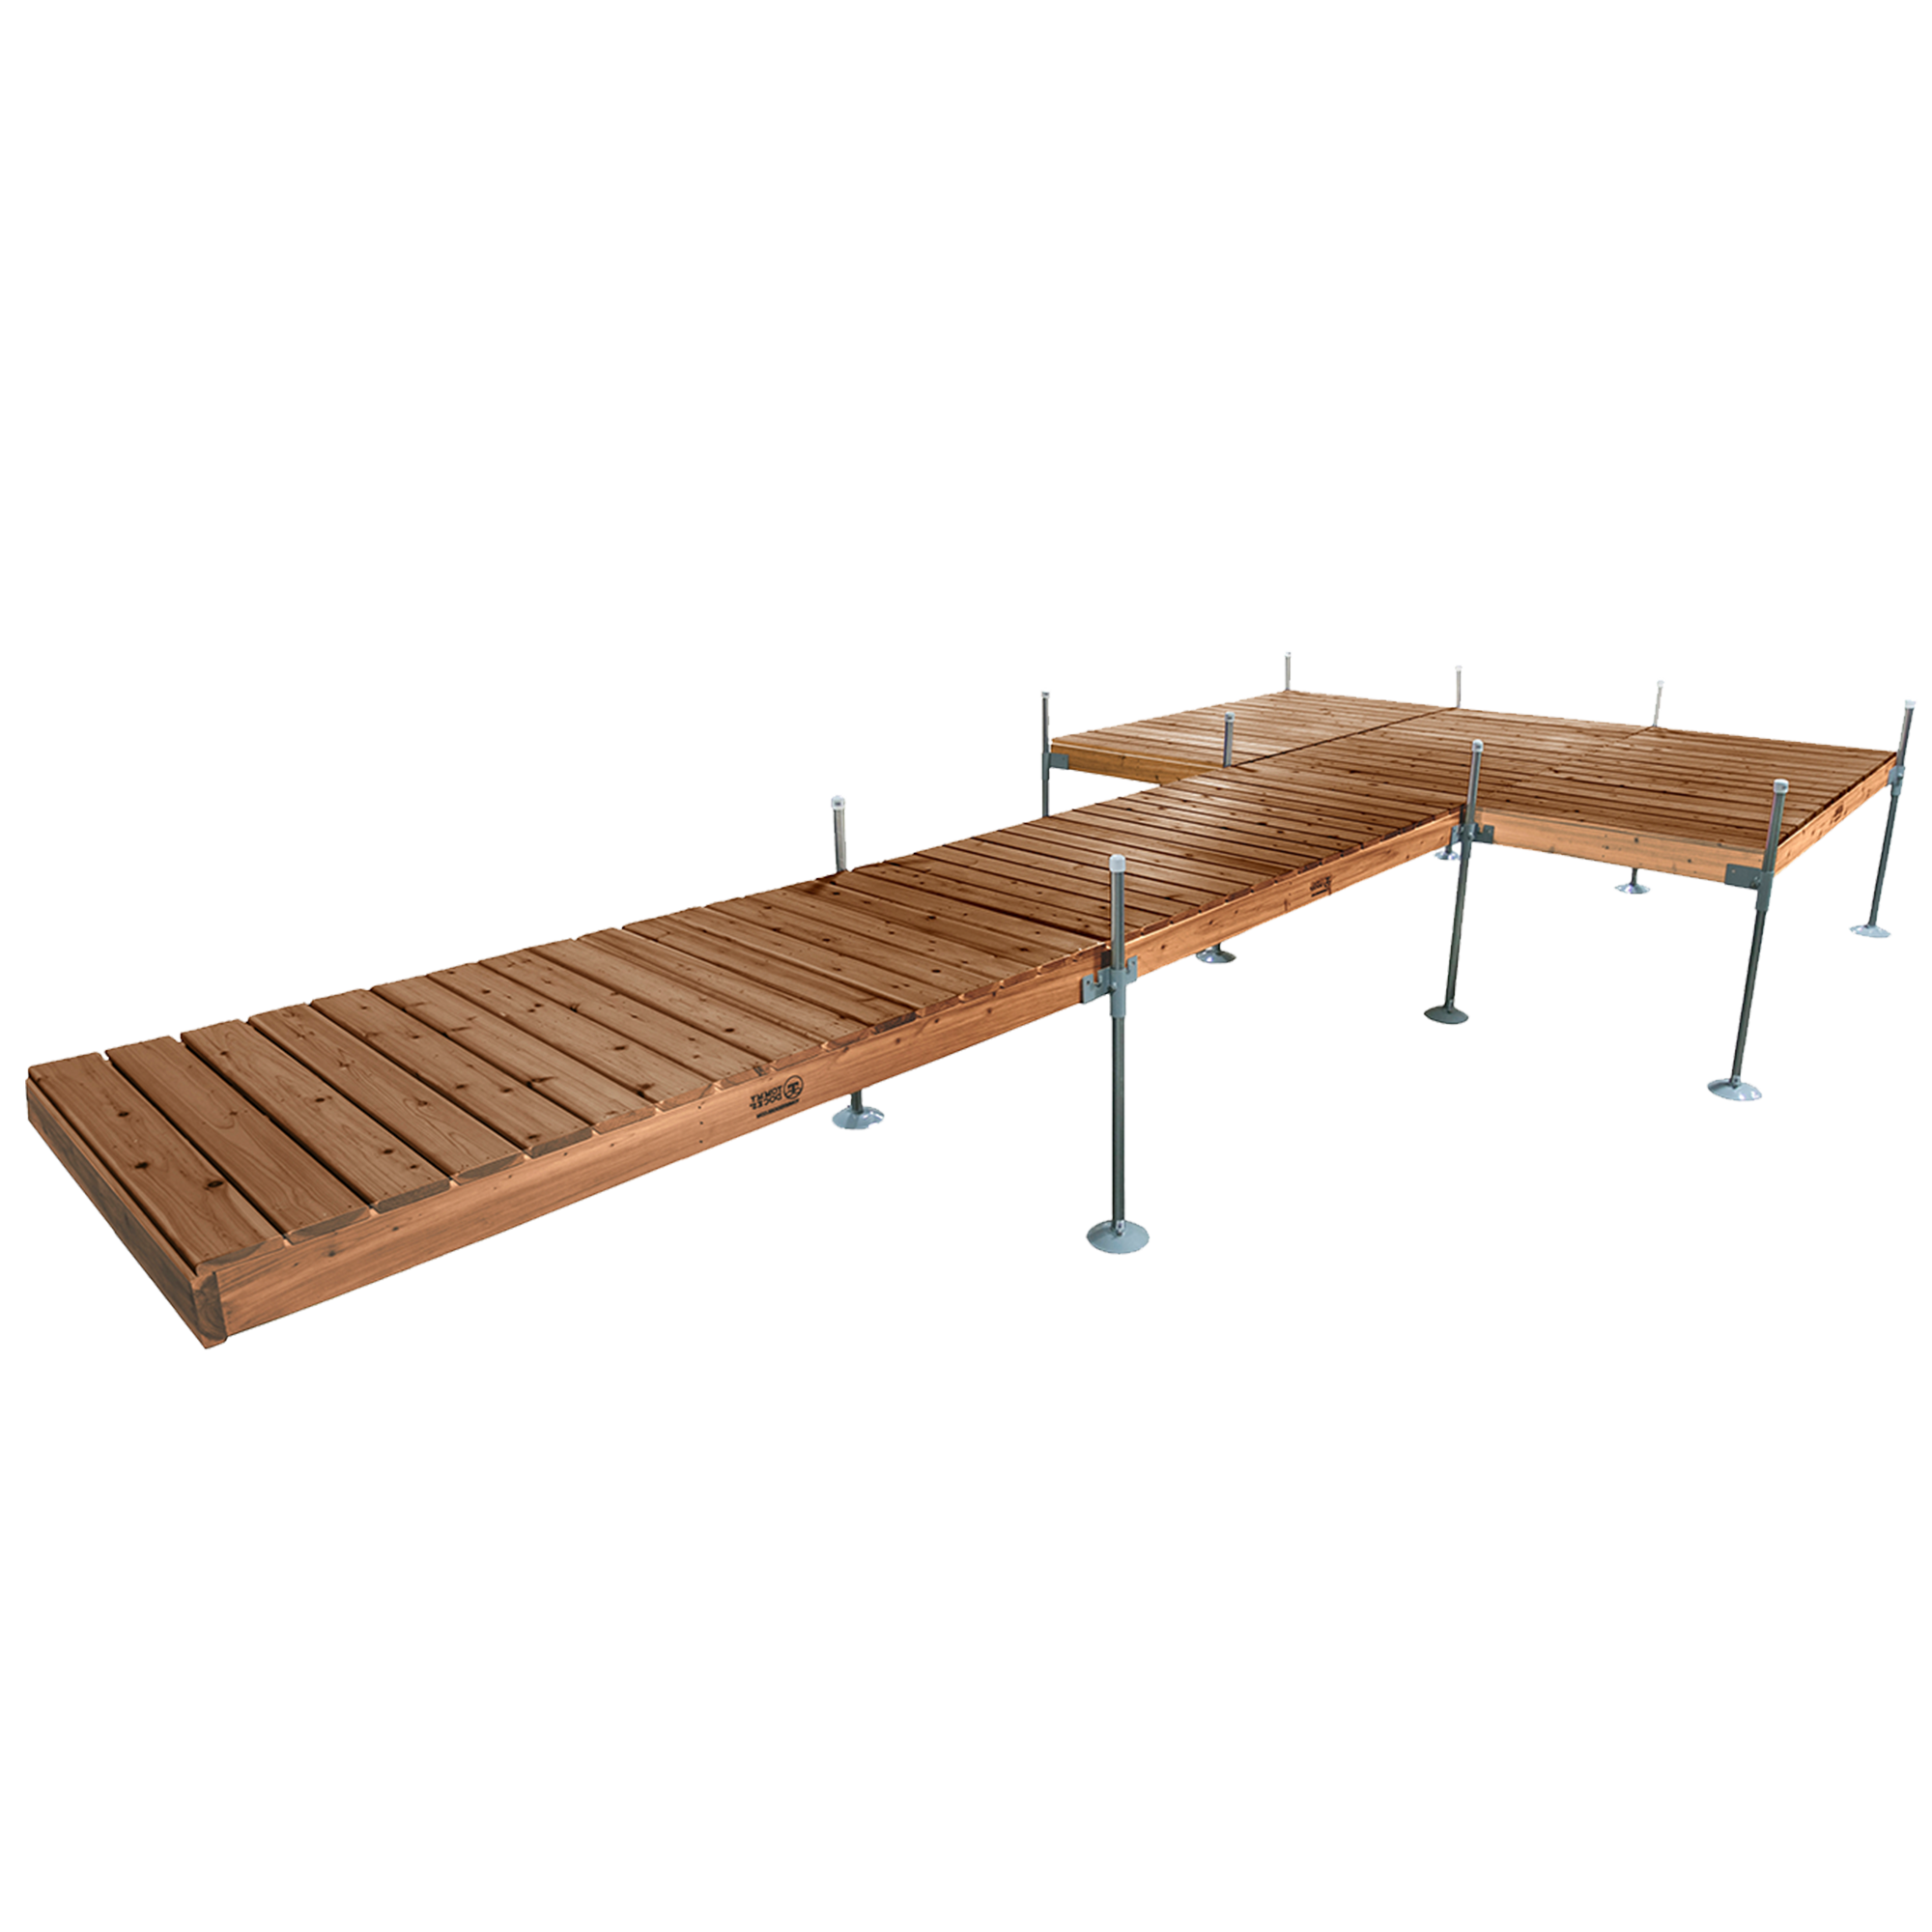 24' Platform Boat Dock System with Cedar Frame and Decking